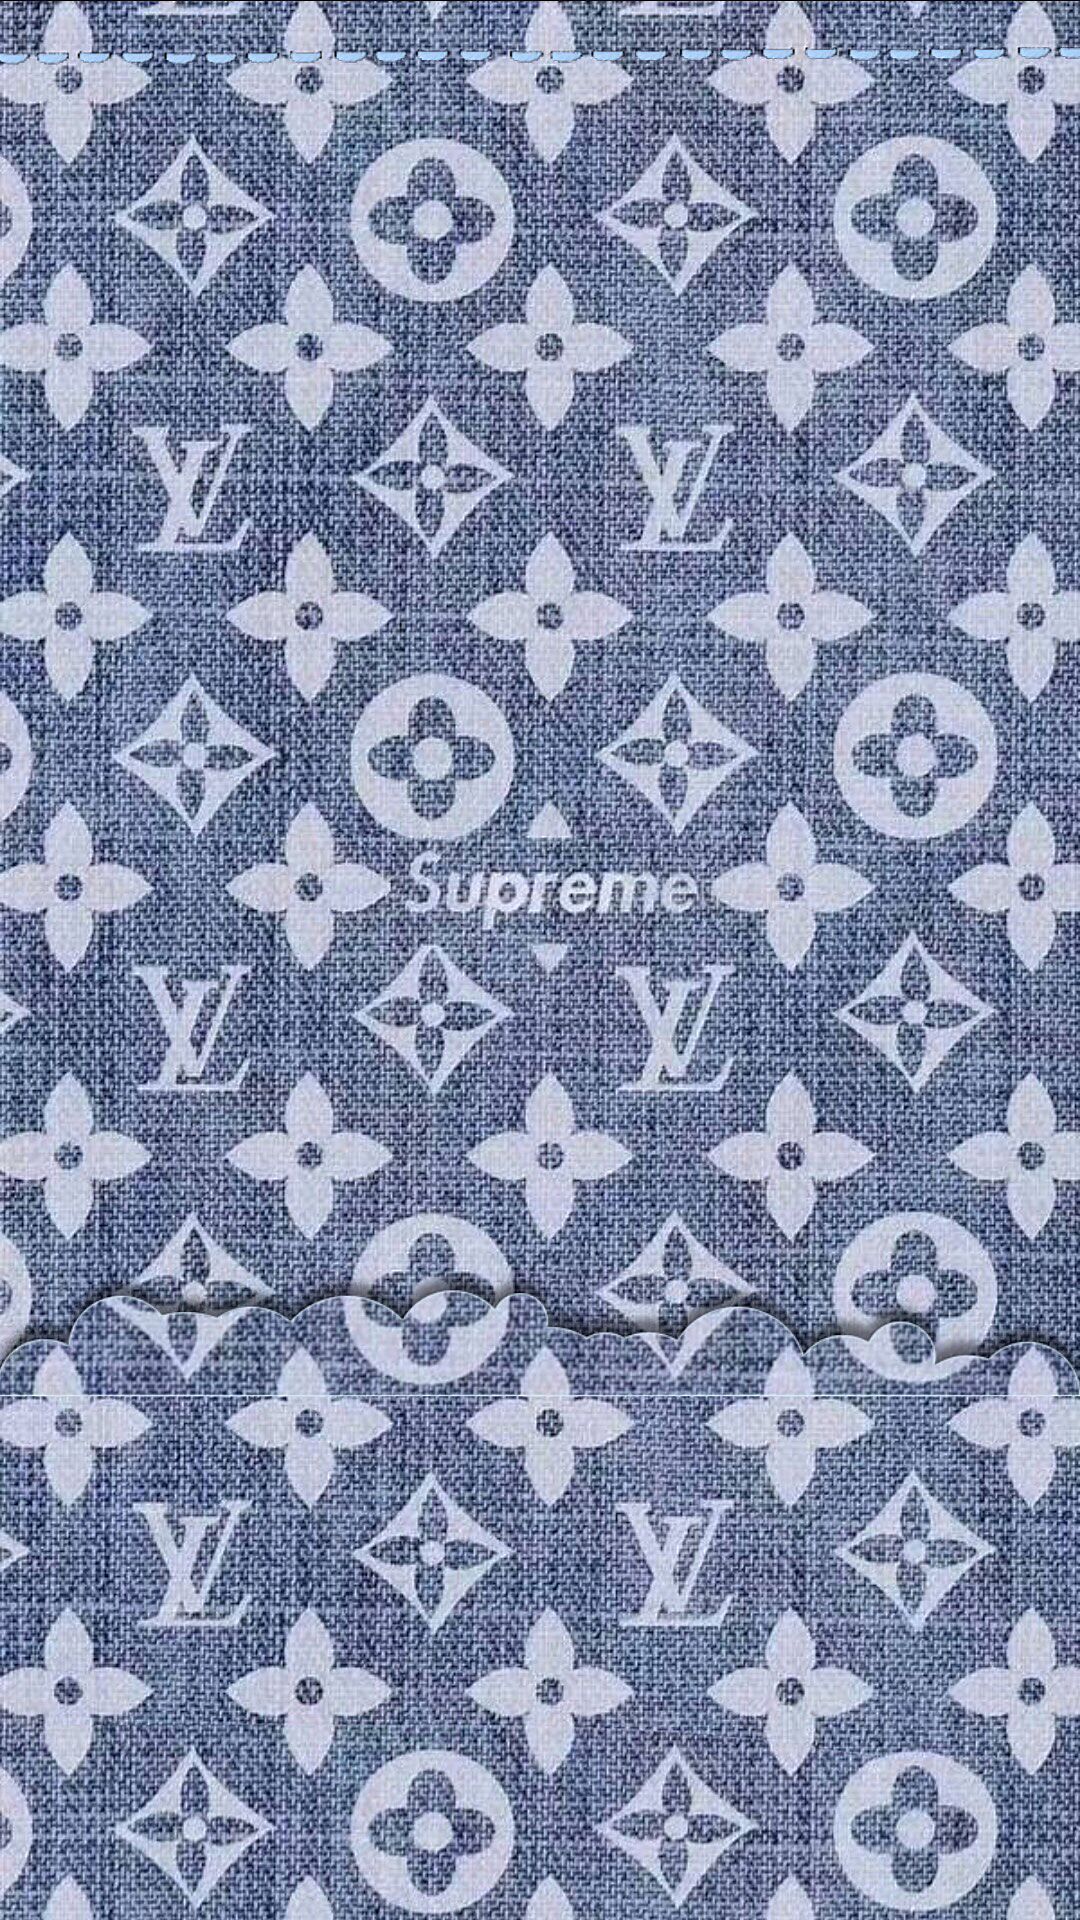 Lv Supreme Wallpapers